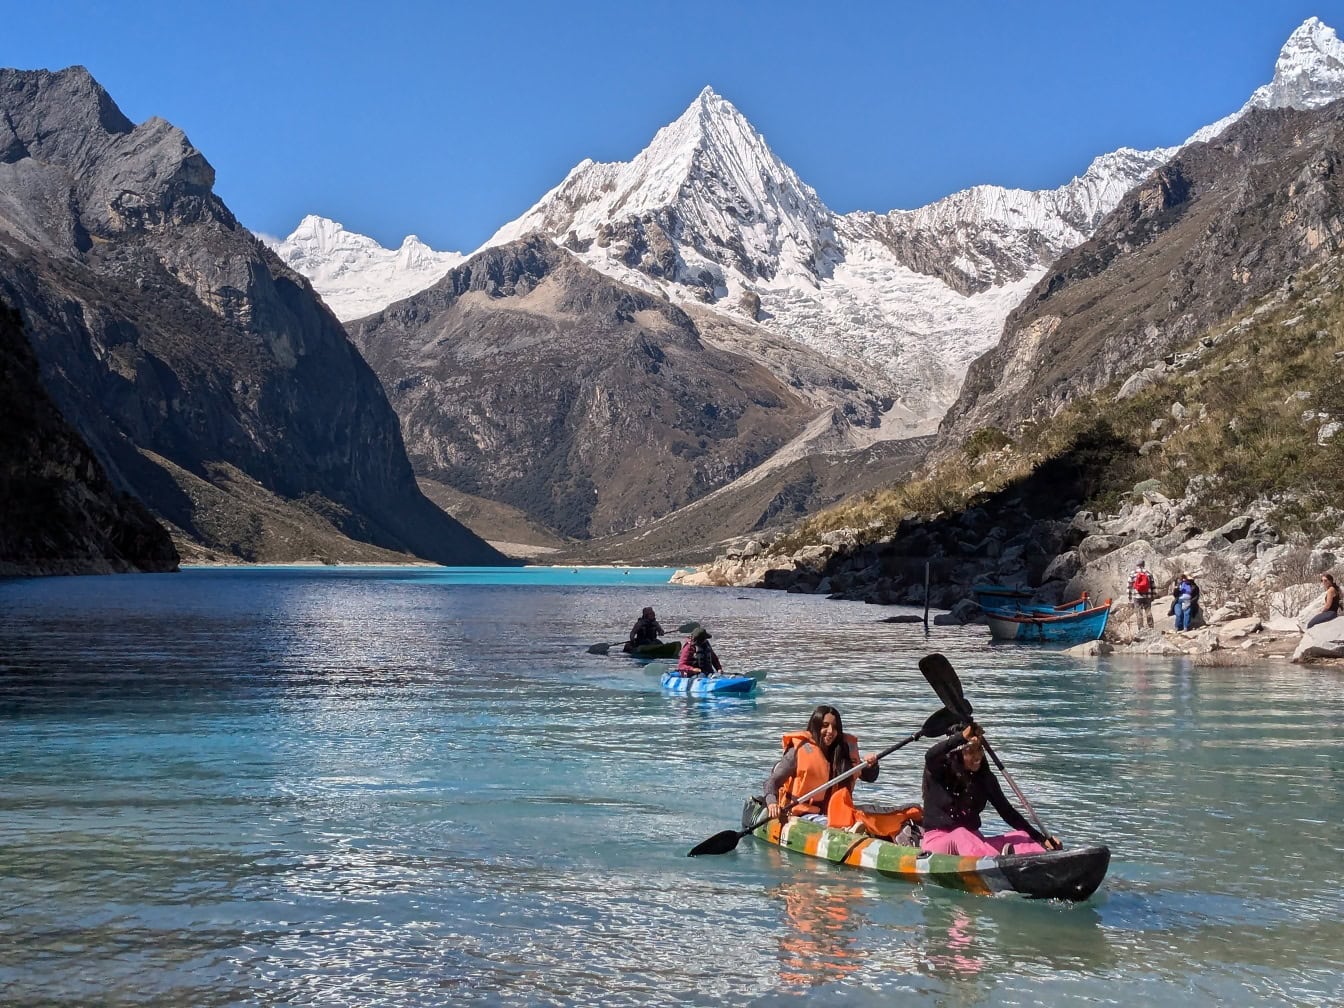 Kajakos emberek a Paron-tónál a Cordillera Blanca-nál, a perui Andokban, hegycsúcsokkal a háttérben